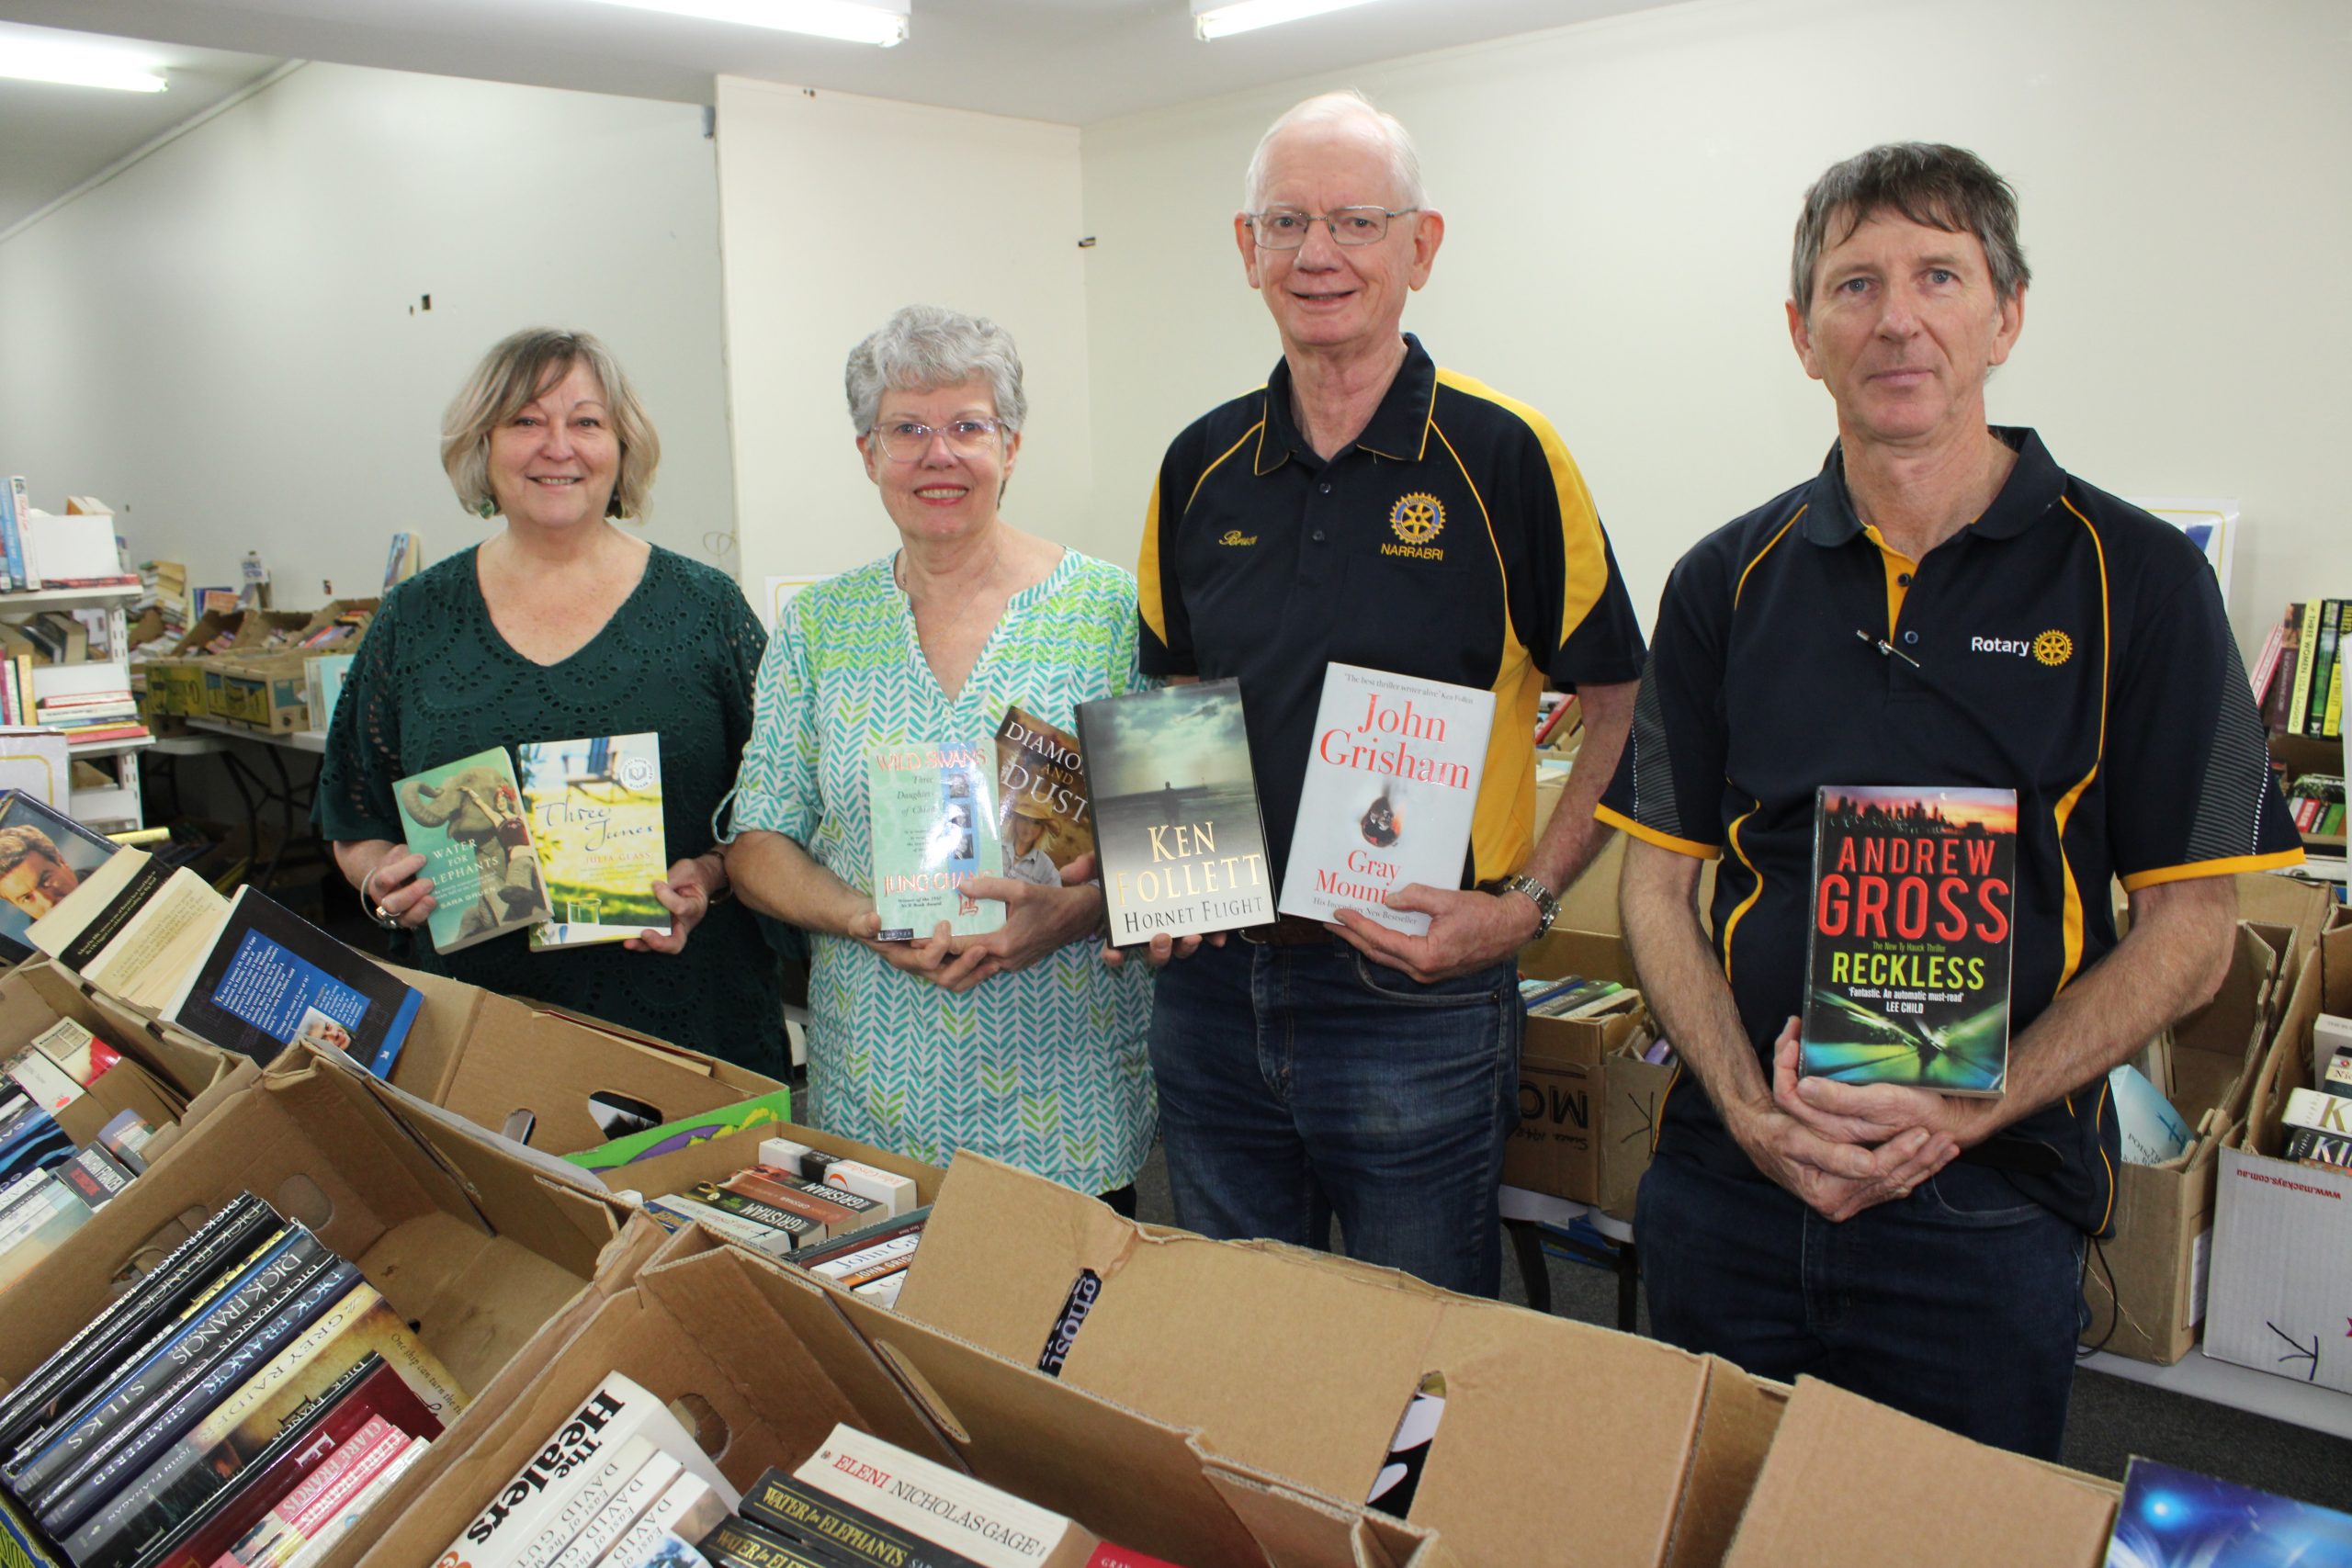 Record-breaking book sale bonanza for Rotary